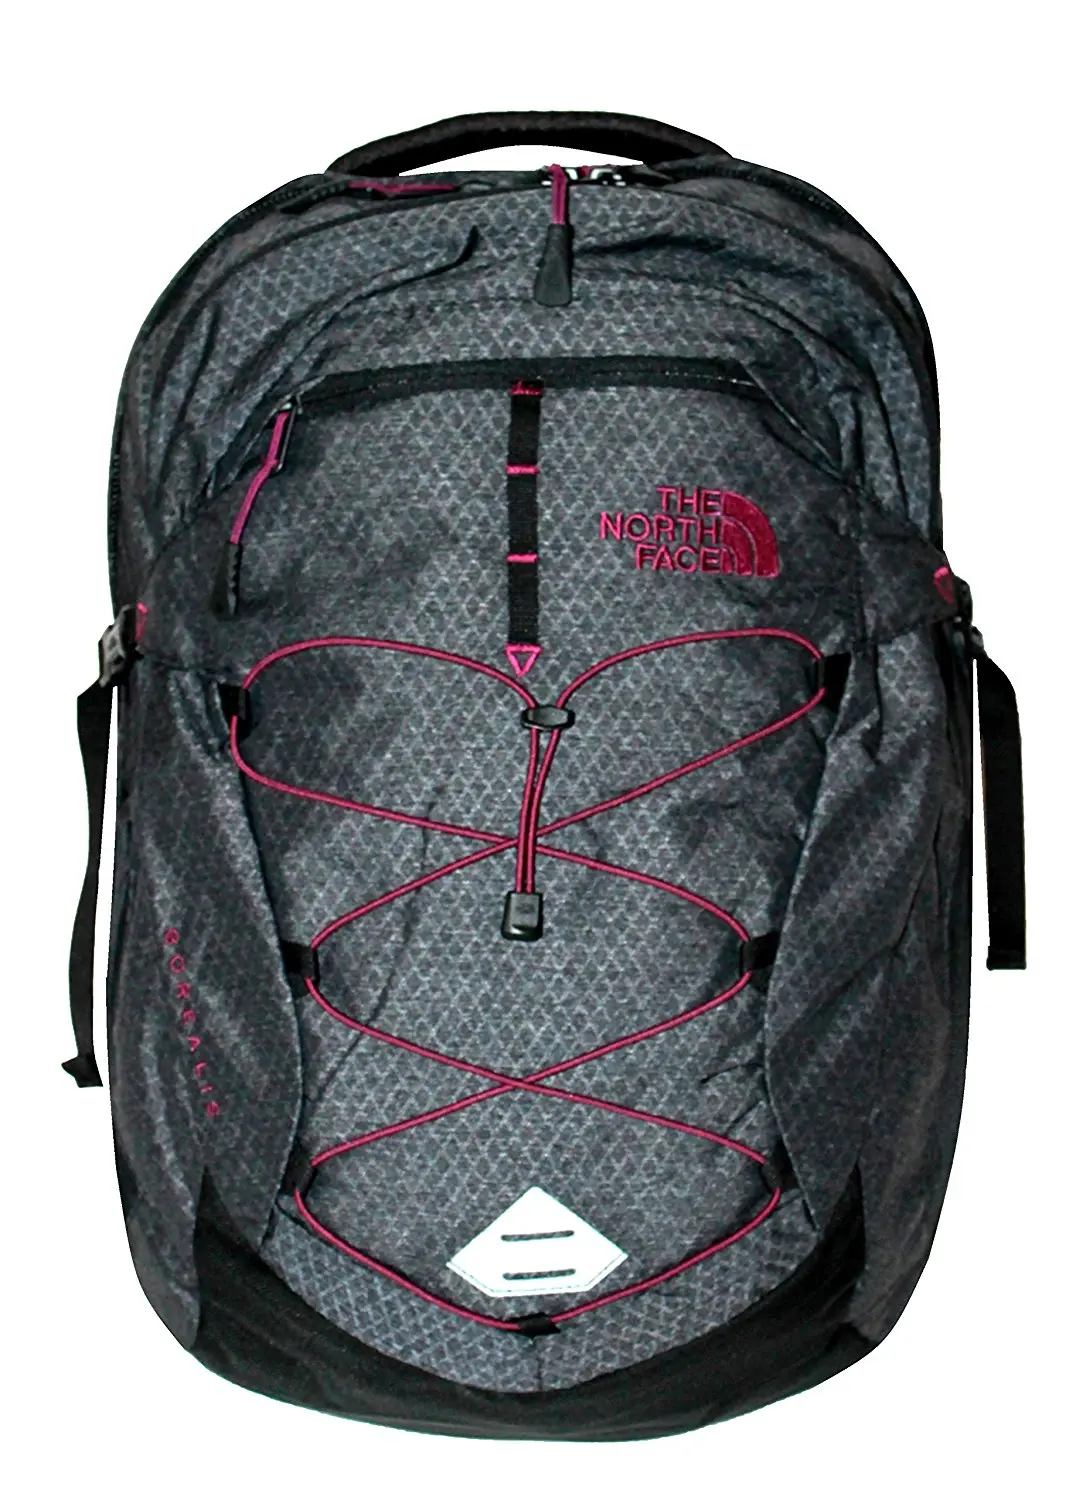 Cheap North Face Backpack Borealis 